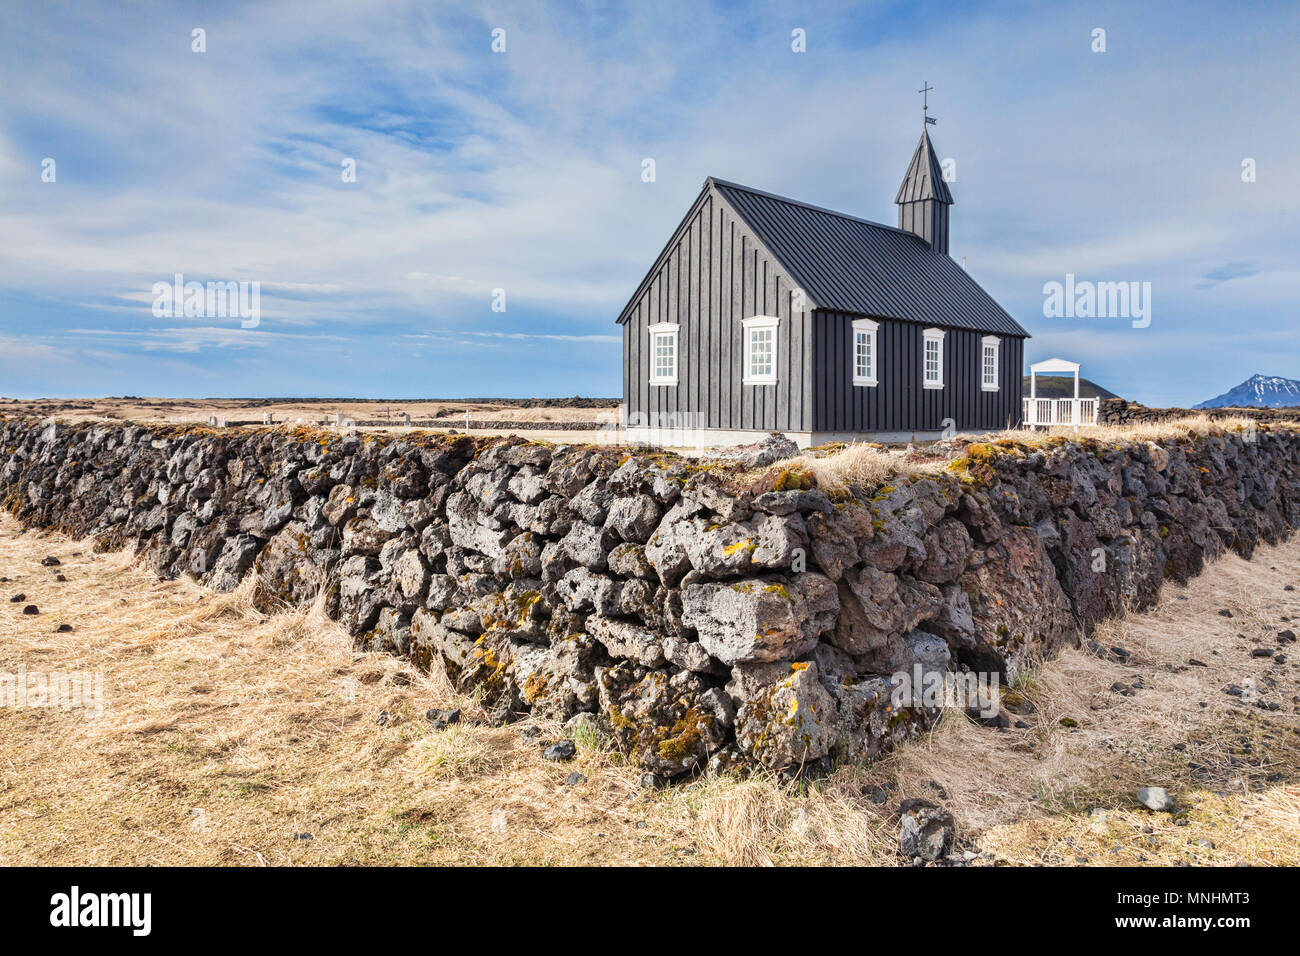 Budir église, connue sous le nom de la petite Eglise Noire, sur la péninsule de Snæfellsnes, à l'ouest de l'Islande, avec un mur en pierre sèche réalisés à partir de la lave. Banque D'Images